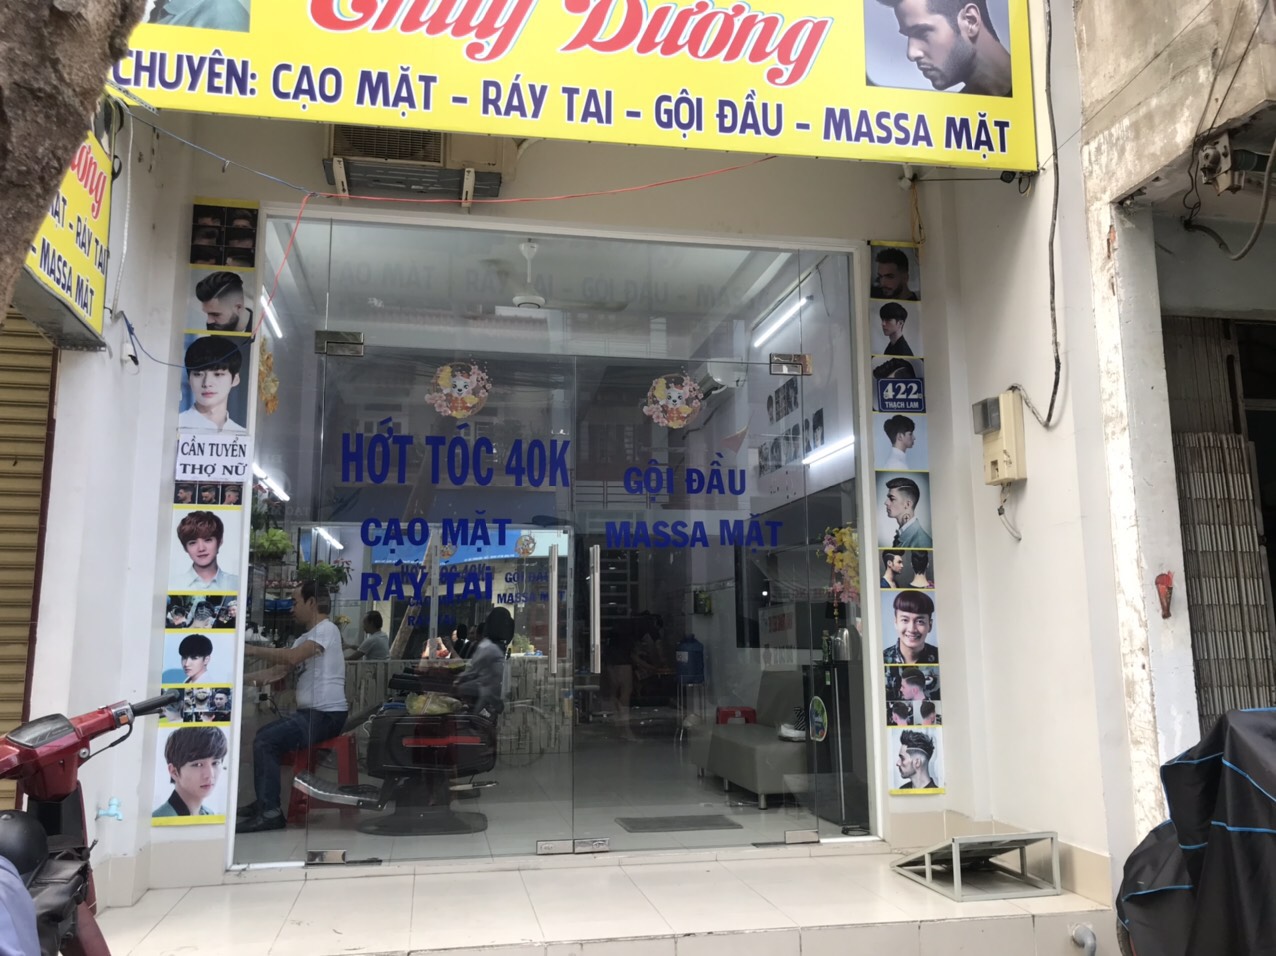 Cần sang tiệm hớt tóc Nam ở đường Thạch Lam Quận Tân Phú HCM   tinbatdongsancom